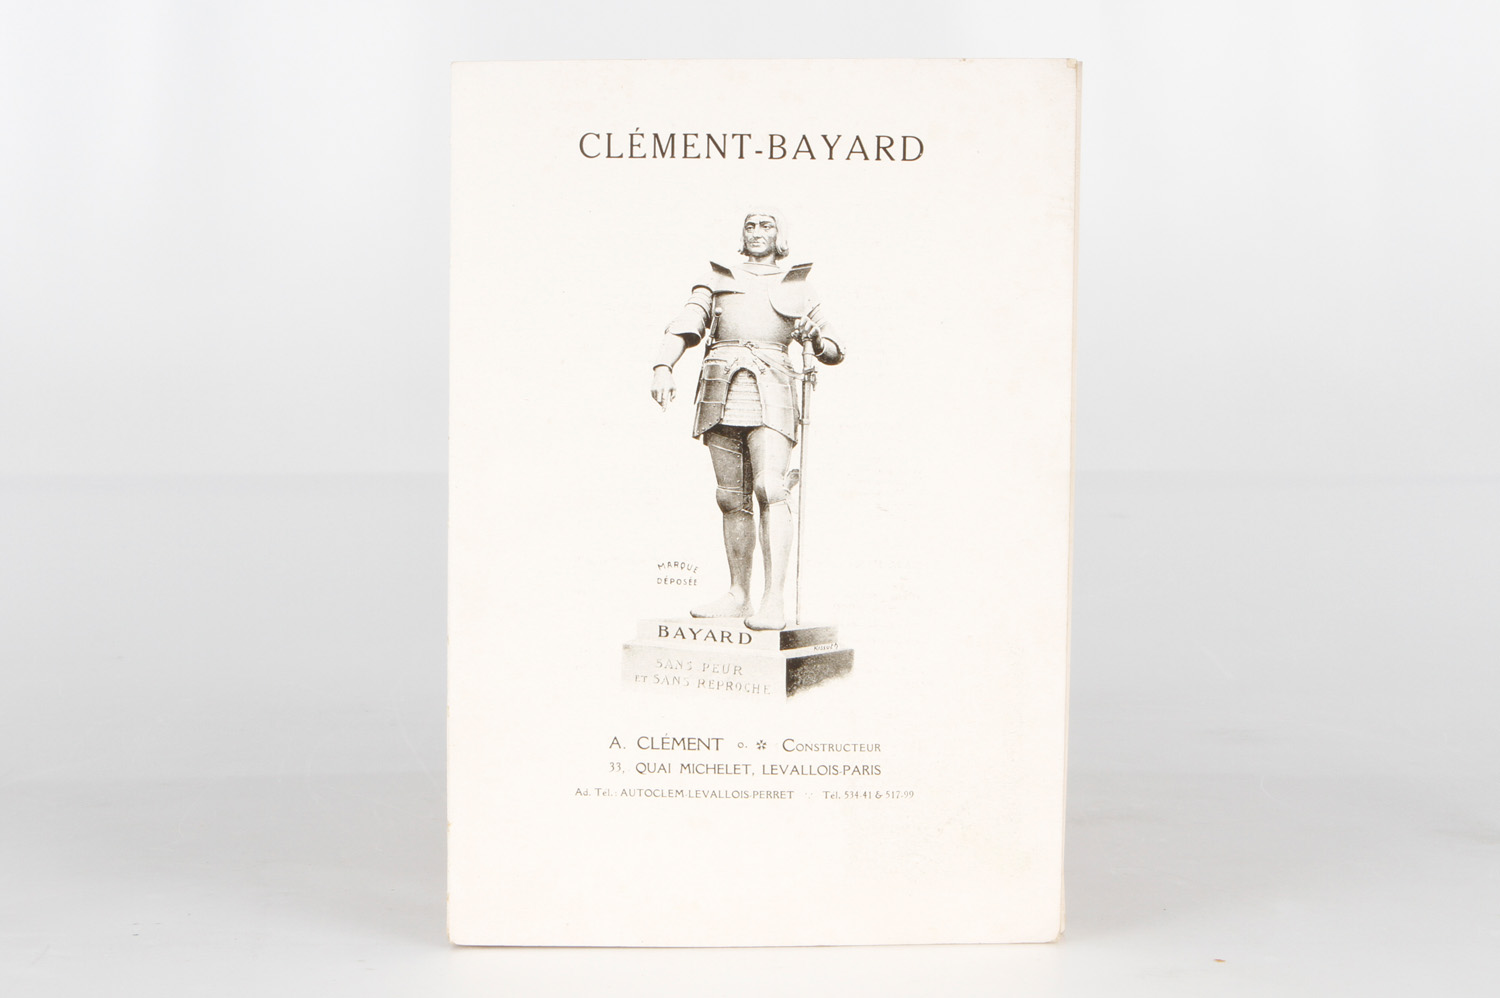 Auto- und Luftfahrzeugkatalog Clement Bayard von 1910, @ franz., 89 Seiten, Einband fehlt, leichte